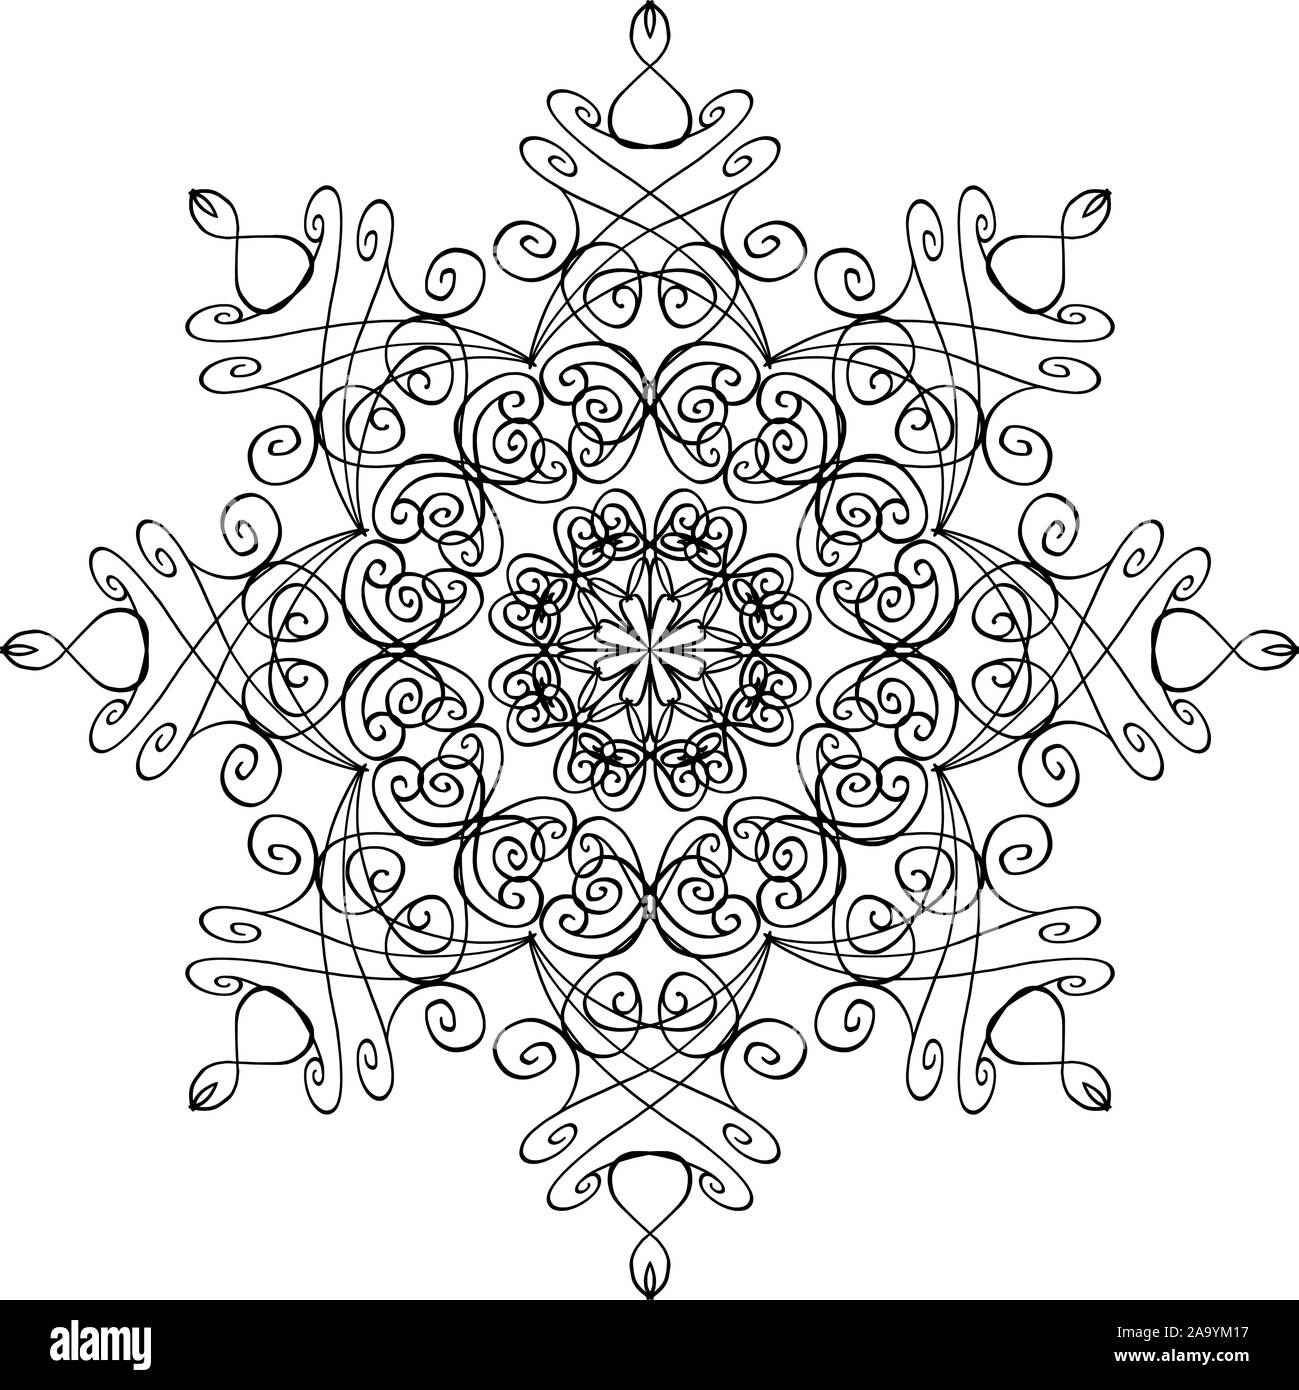 Vector penna e inchiostro disegno di fiocco di neve di forma rotonda, ornamentali in graphic design in stile mandala. Illustrazione Vettoriale